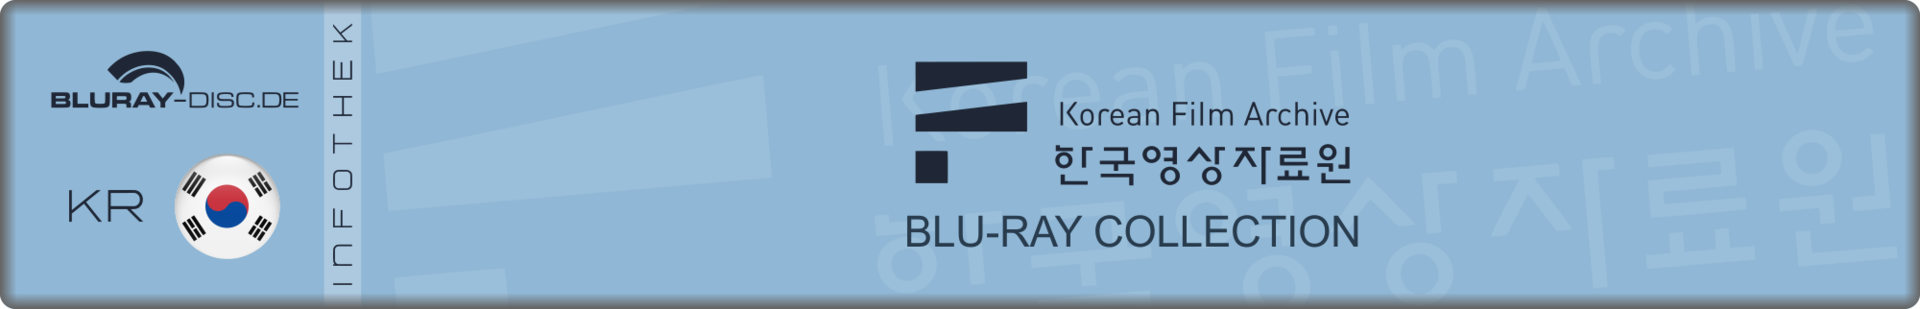 KOFA_Blu-ray_Collection.png